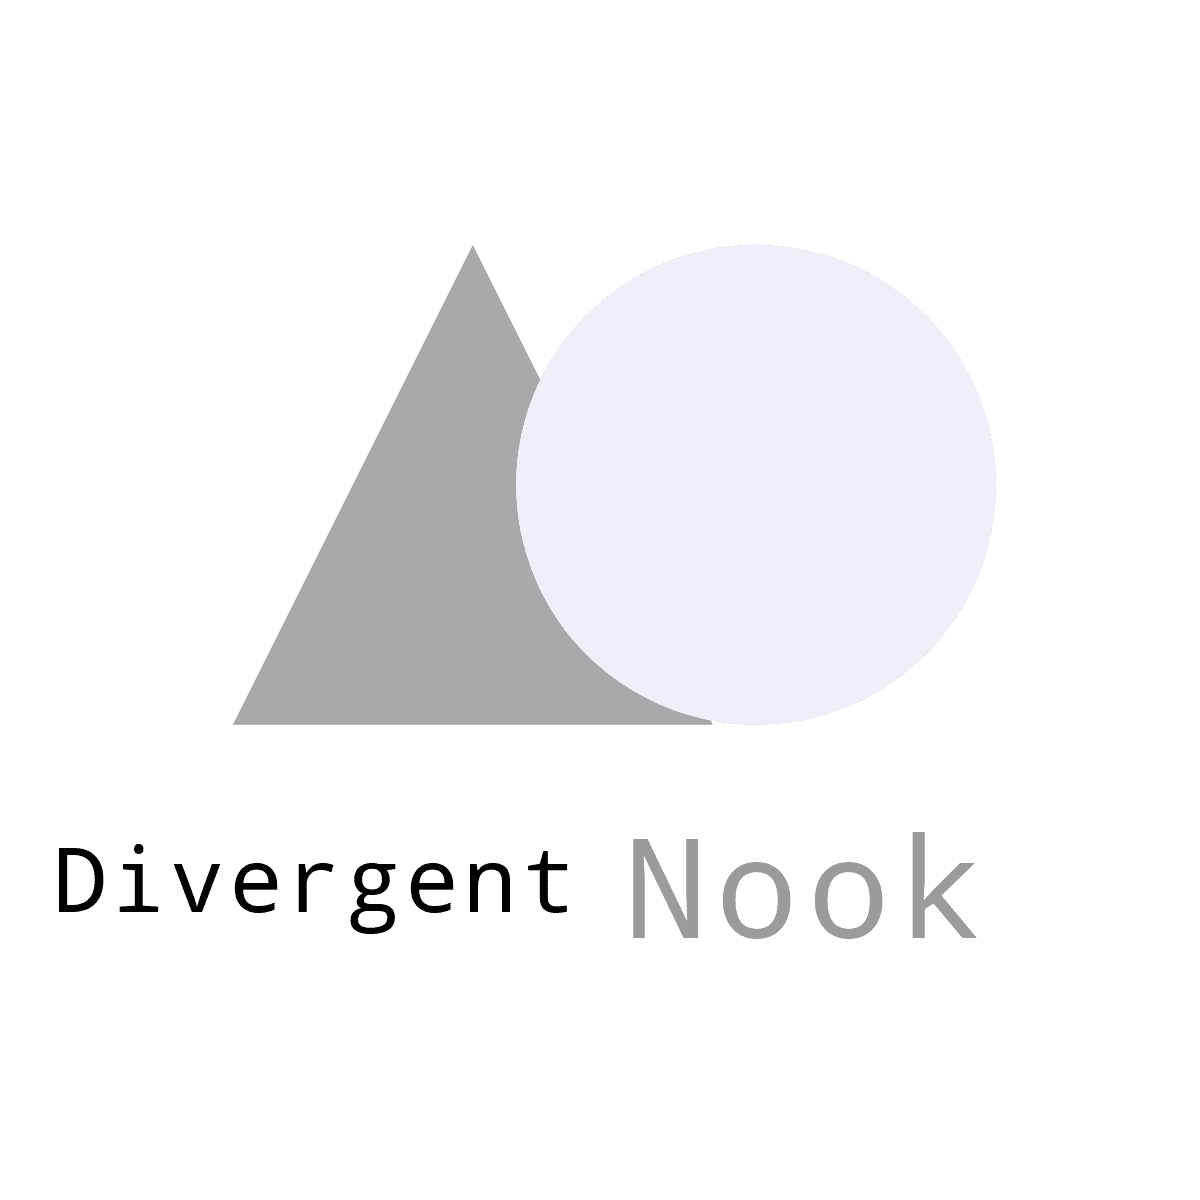 Divergent Nook